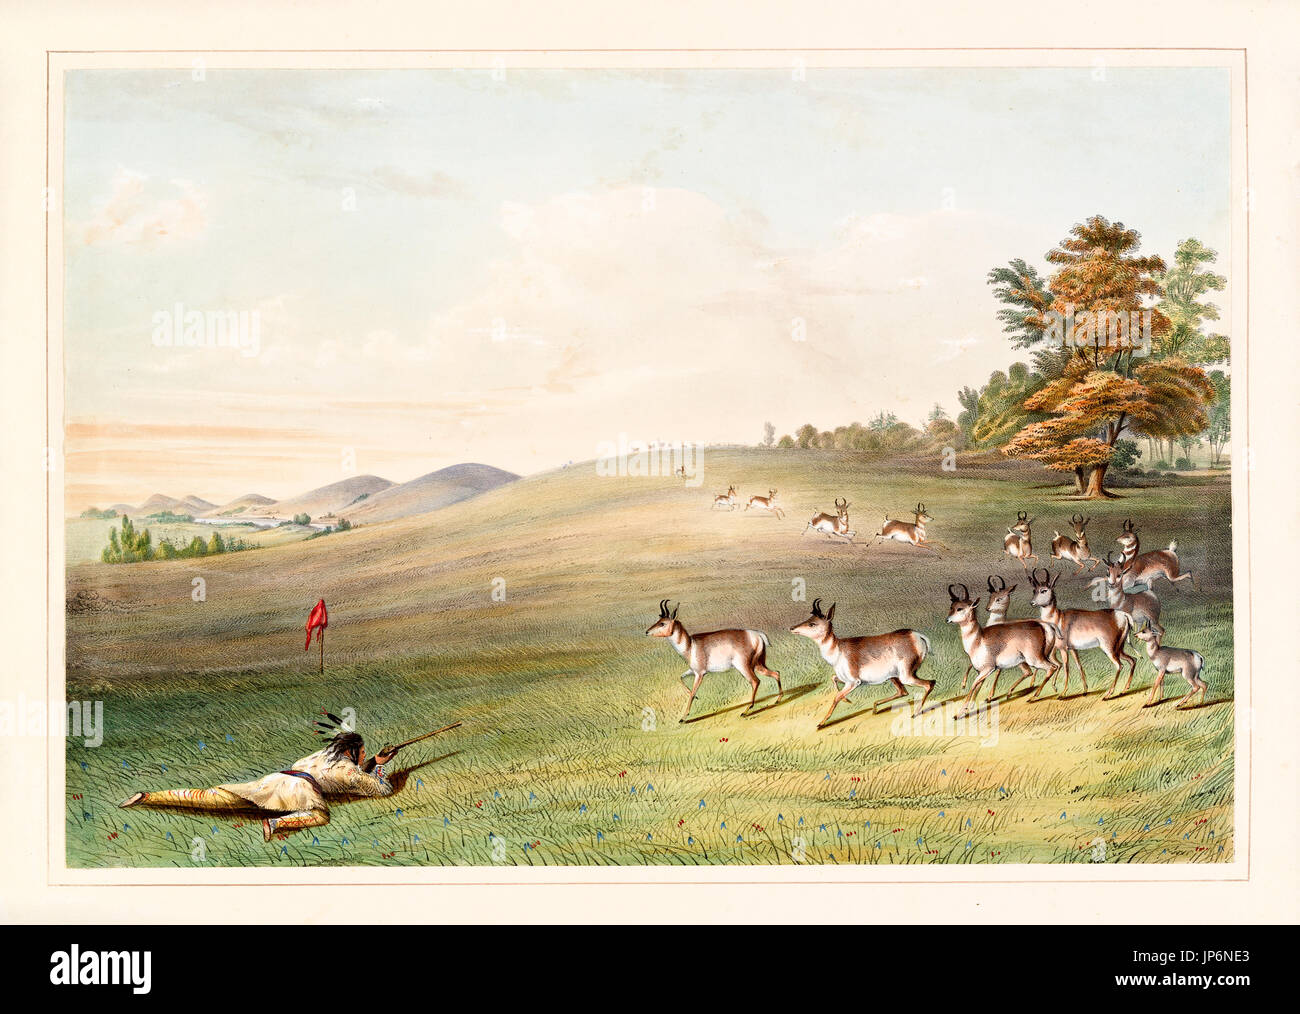 Disparo de antílope. Por G. Catlin, publ. en Catlin's North American Indian Portfolio..., Ackerman, Nueva York, 1845 Foto de stock